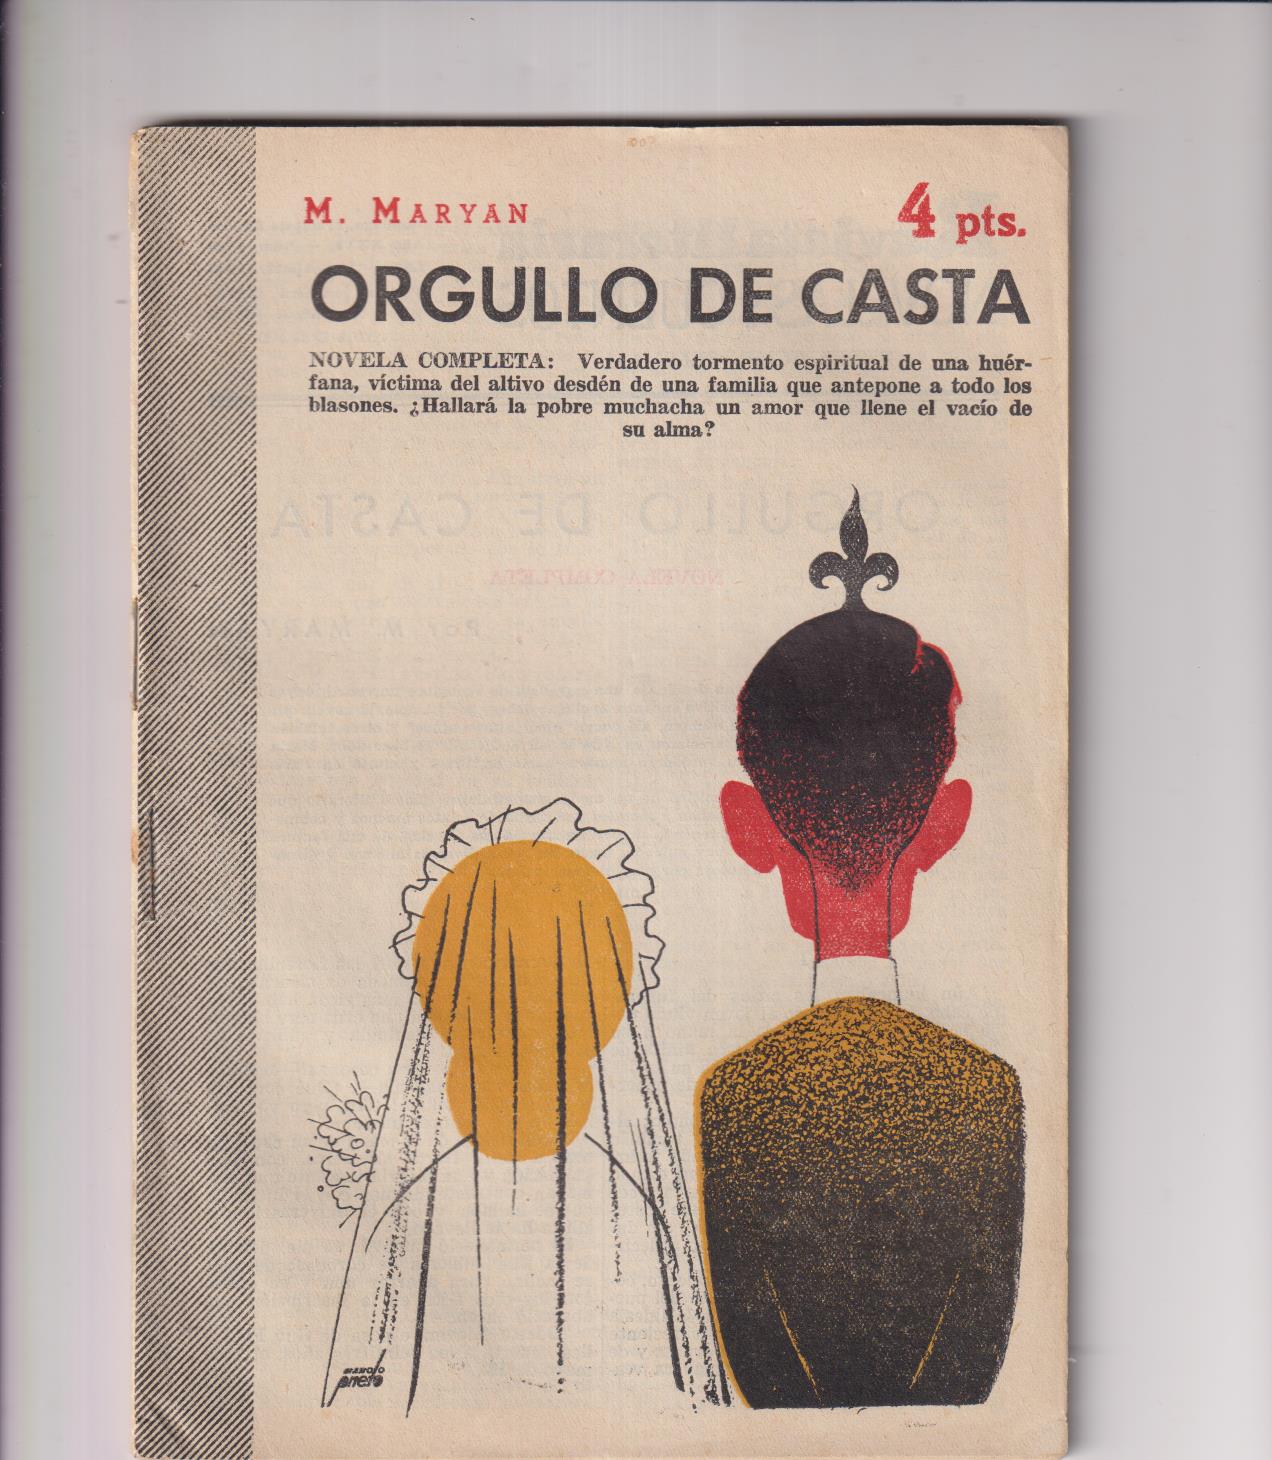 Revista Literaria Novelas y Cuentos nº 1215. M. Maryan. Orgullo de casta. Año 1954